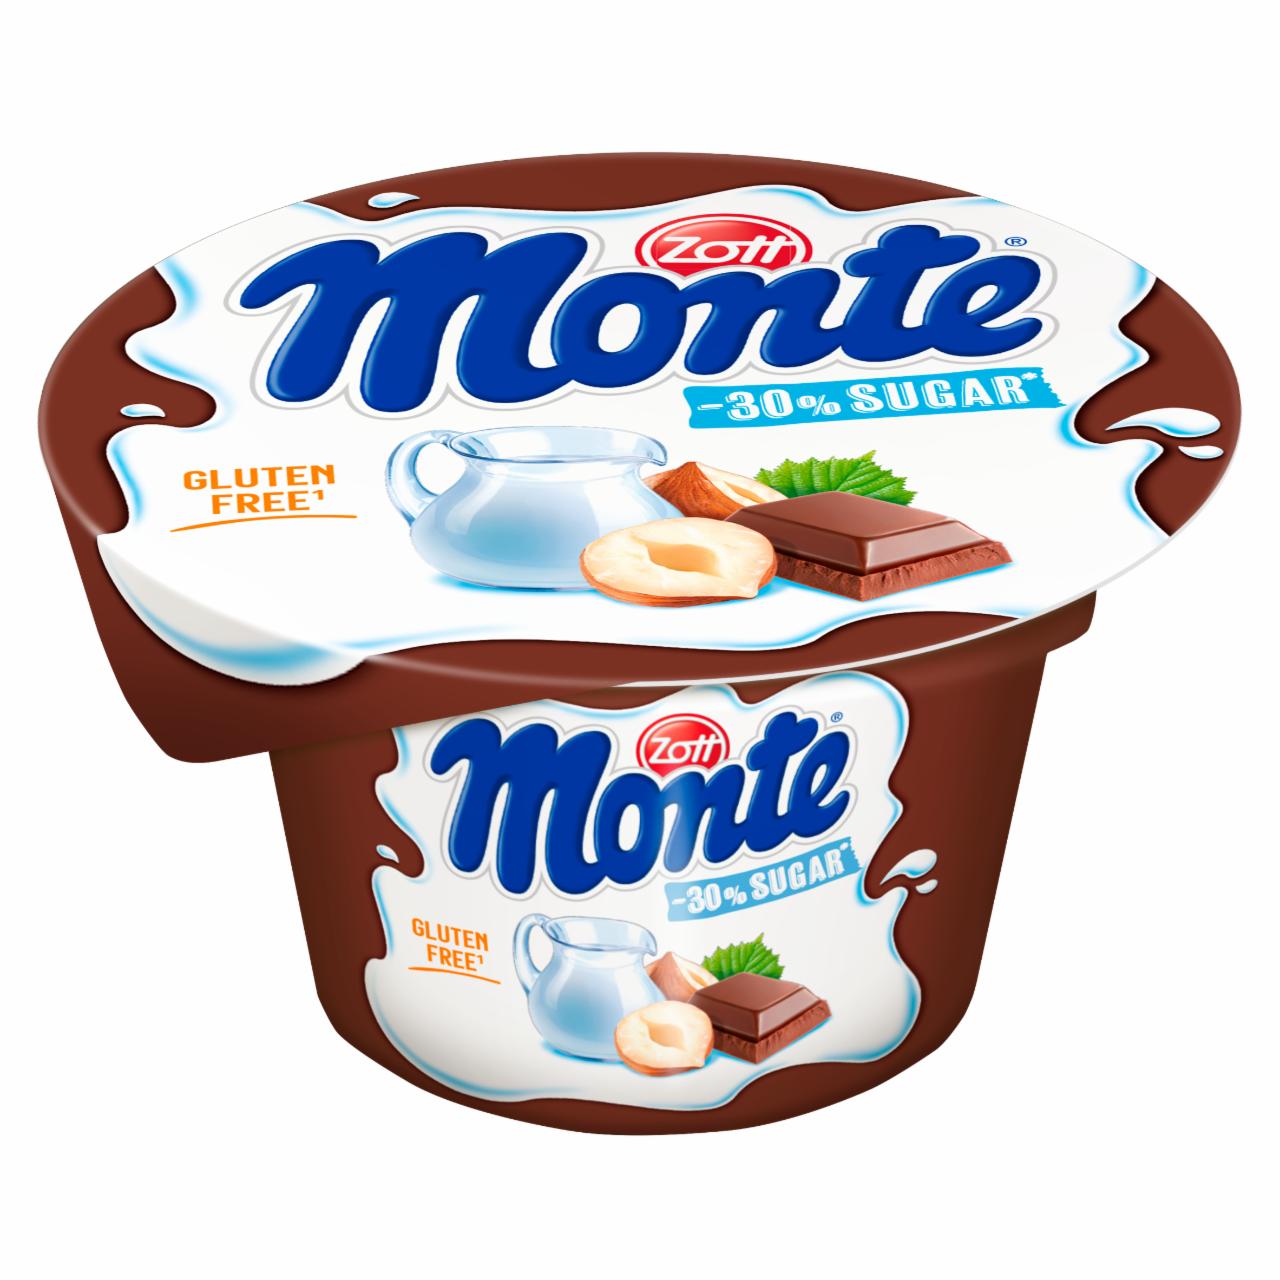 Képek - Zott Monte csokoládés, mogyorós tejdesszert -30% cukorral 150 g